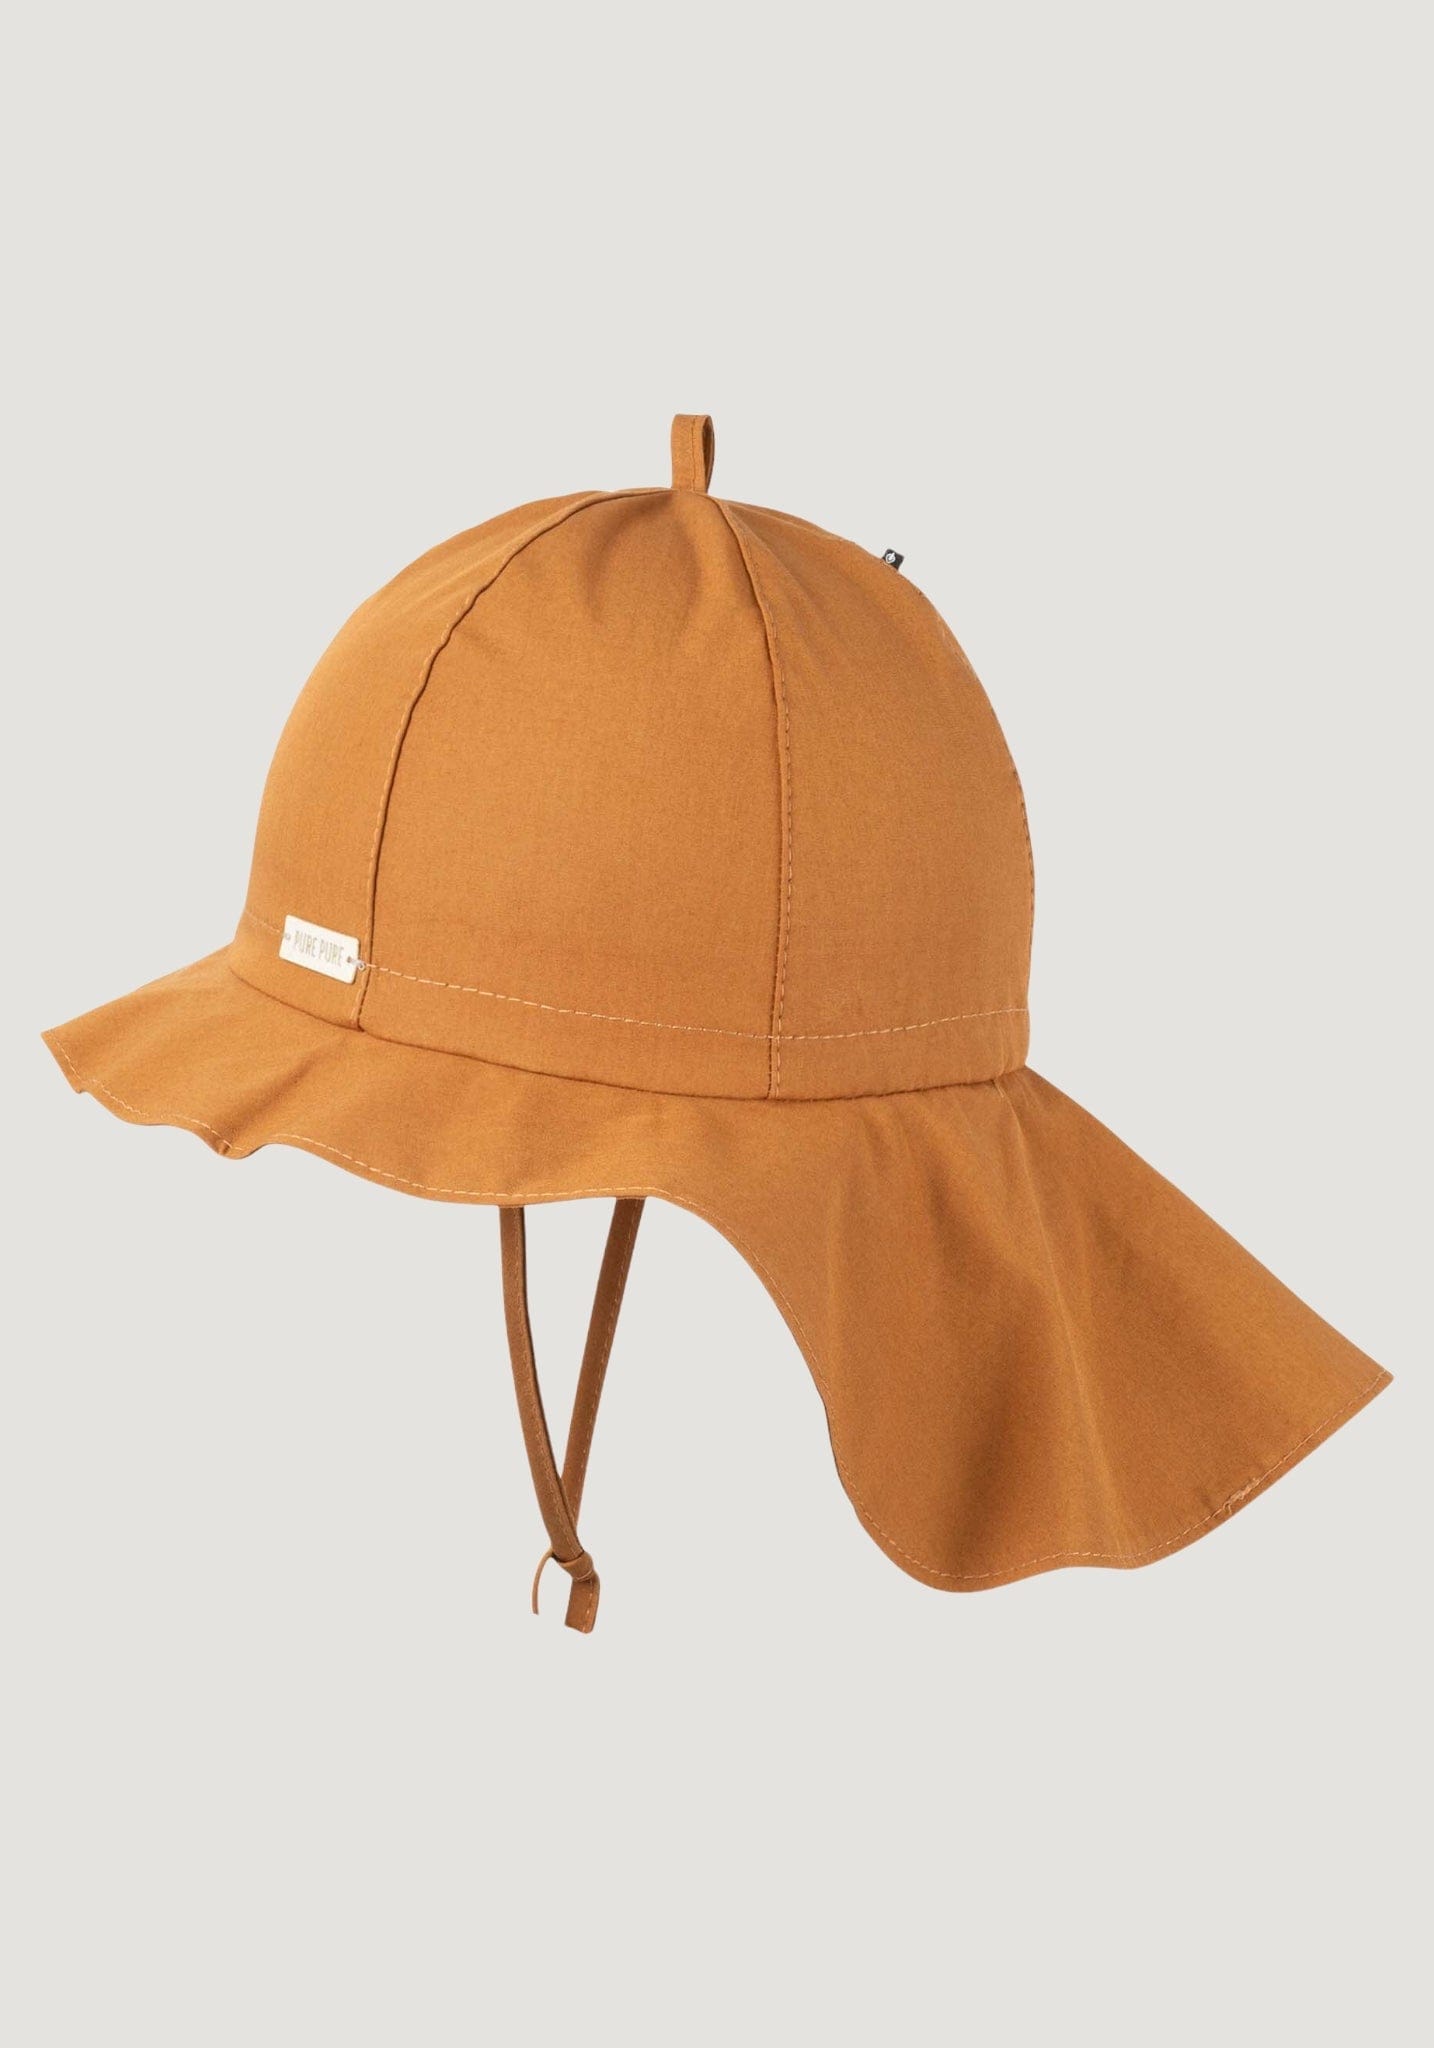 Pălărie ajustabilă Light bumbac - Sahara Pure Pure HipHip.ro